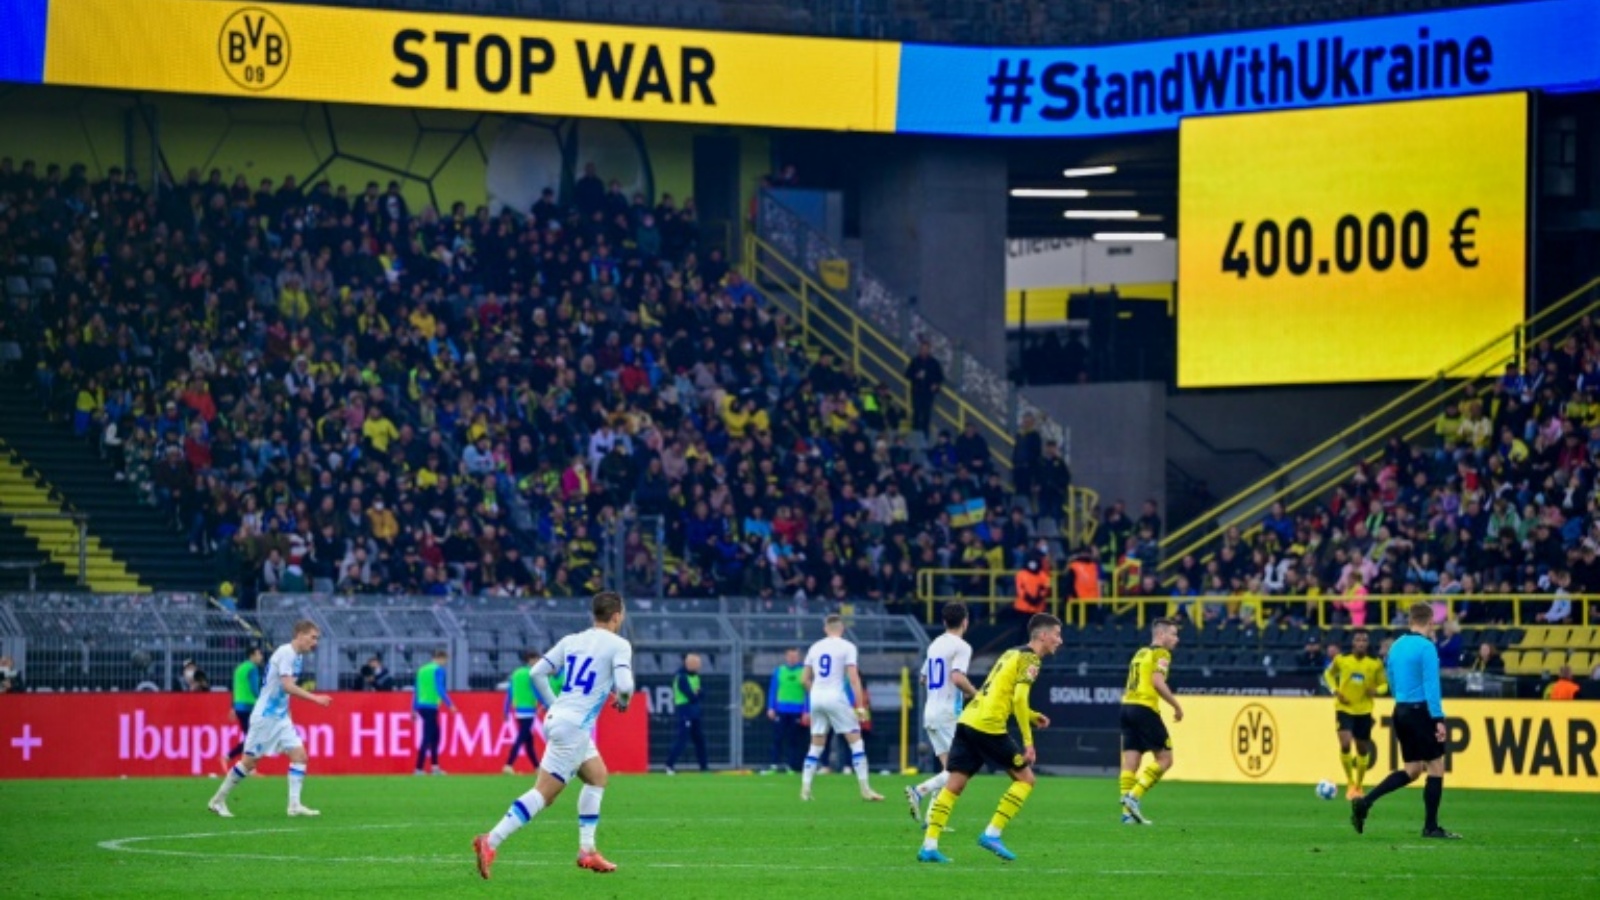 لعب دينامو كييف الأوكراني سلسلة من المباريات الودية لجمع التبرعات، بما فيها مباراة ضد فنربغشة في اسطنبول